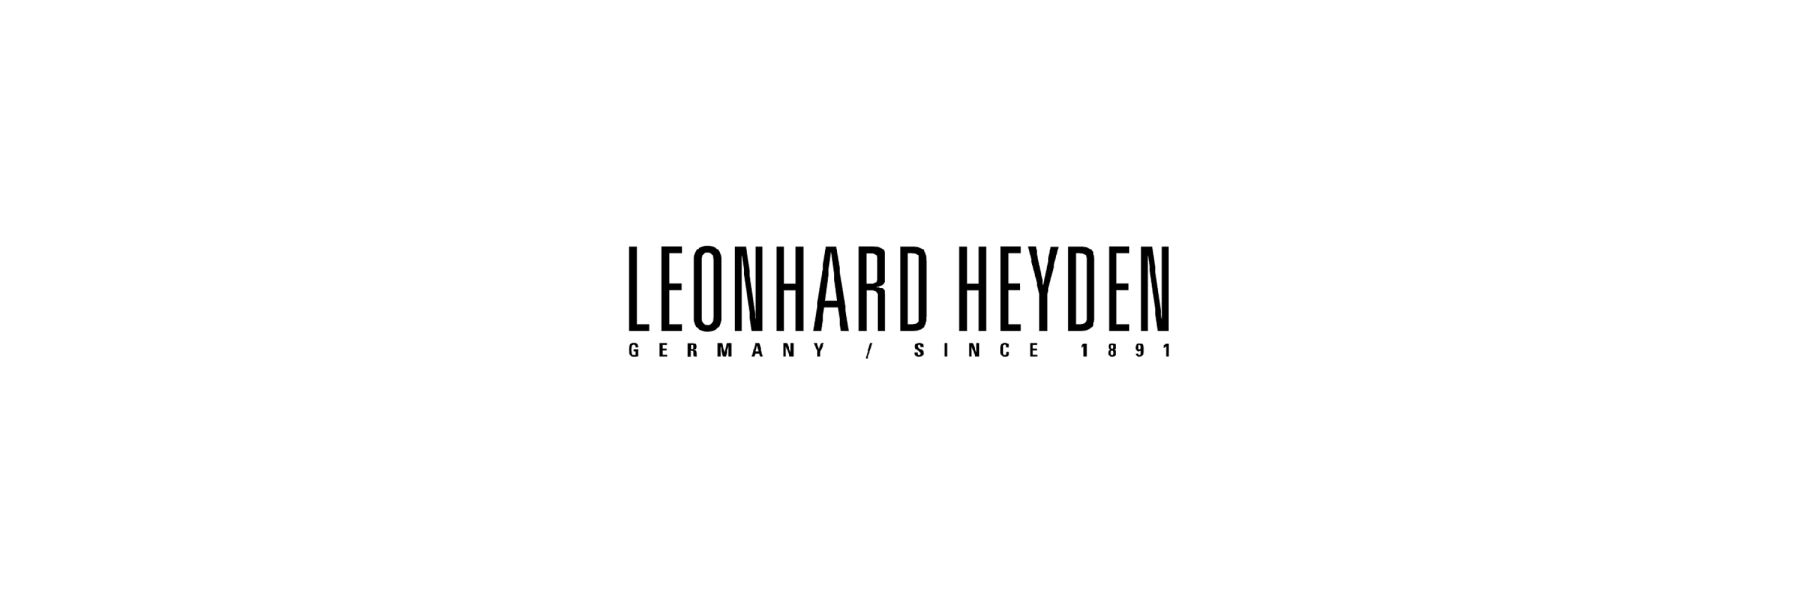 Leonhard Hyden